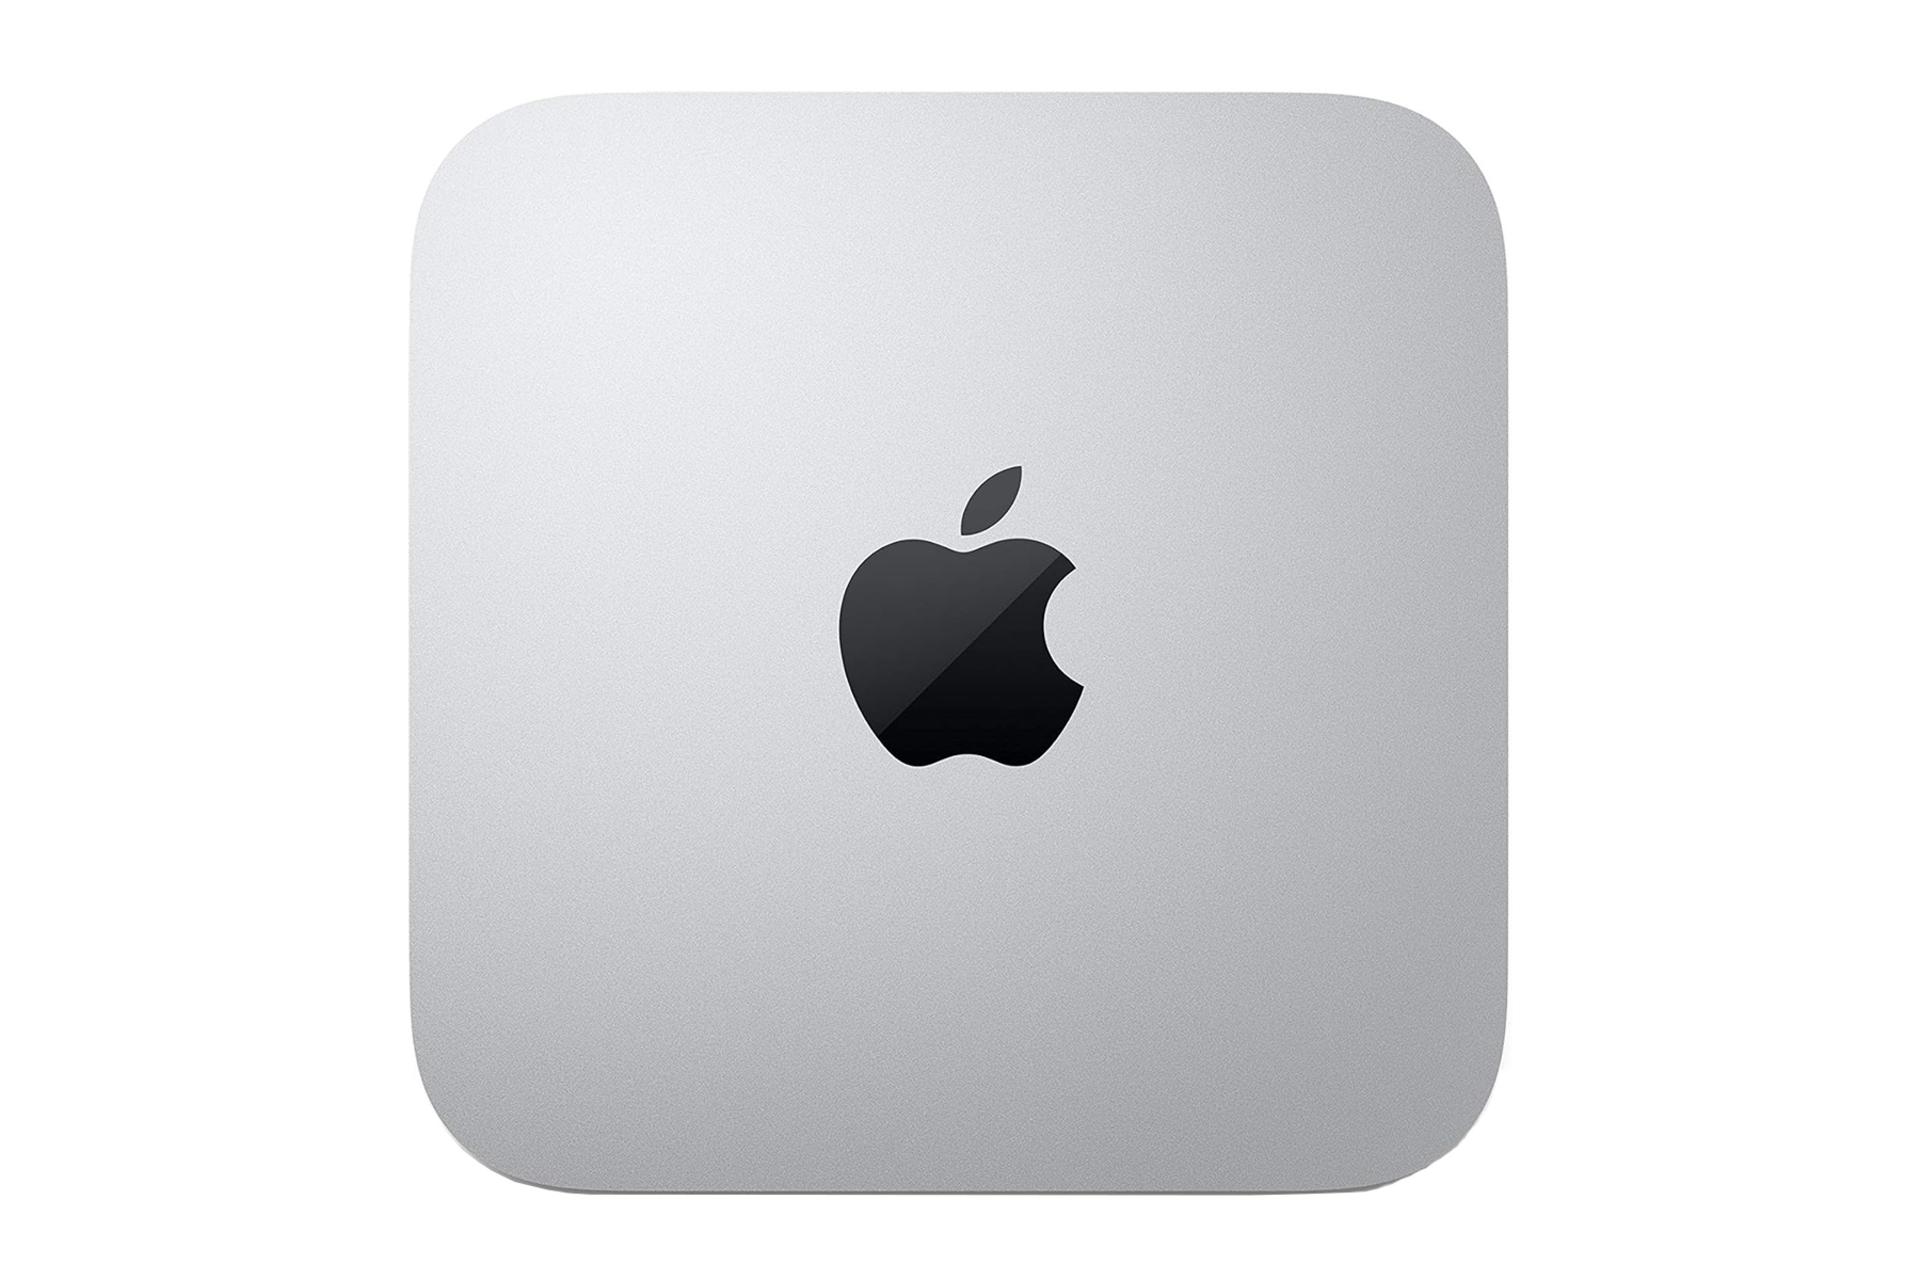 کامپیوتر کوچک مک مینی مدل 2020 اپل / Apple Mac Mini 2020